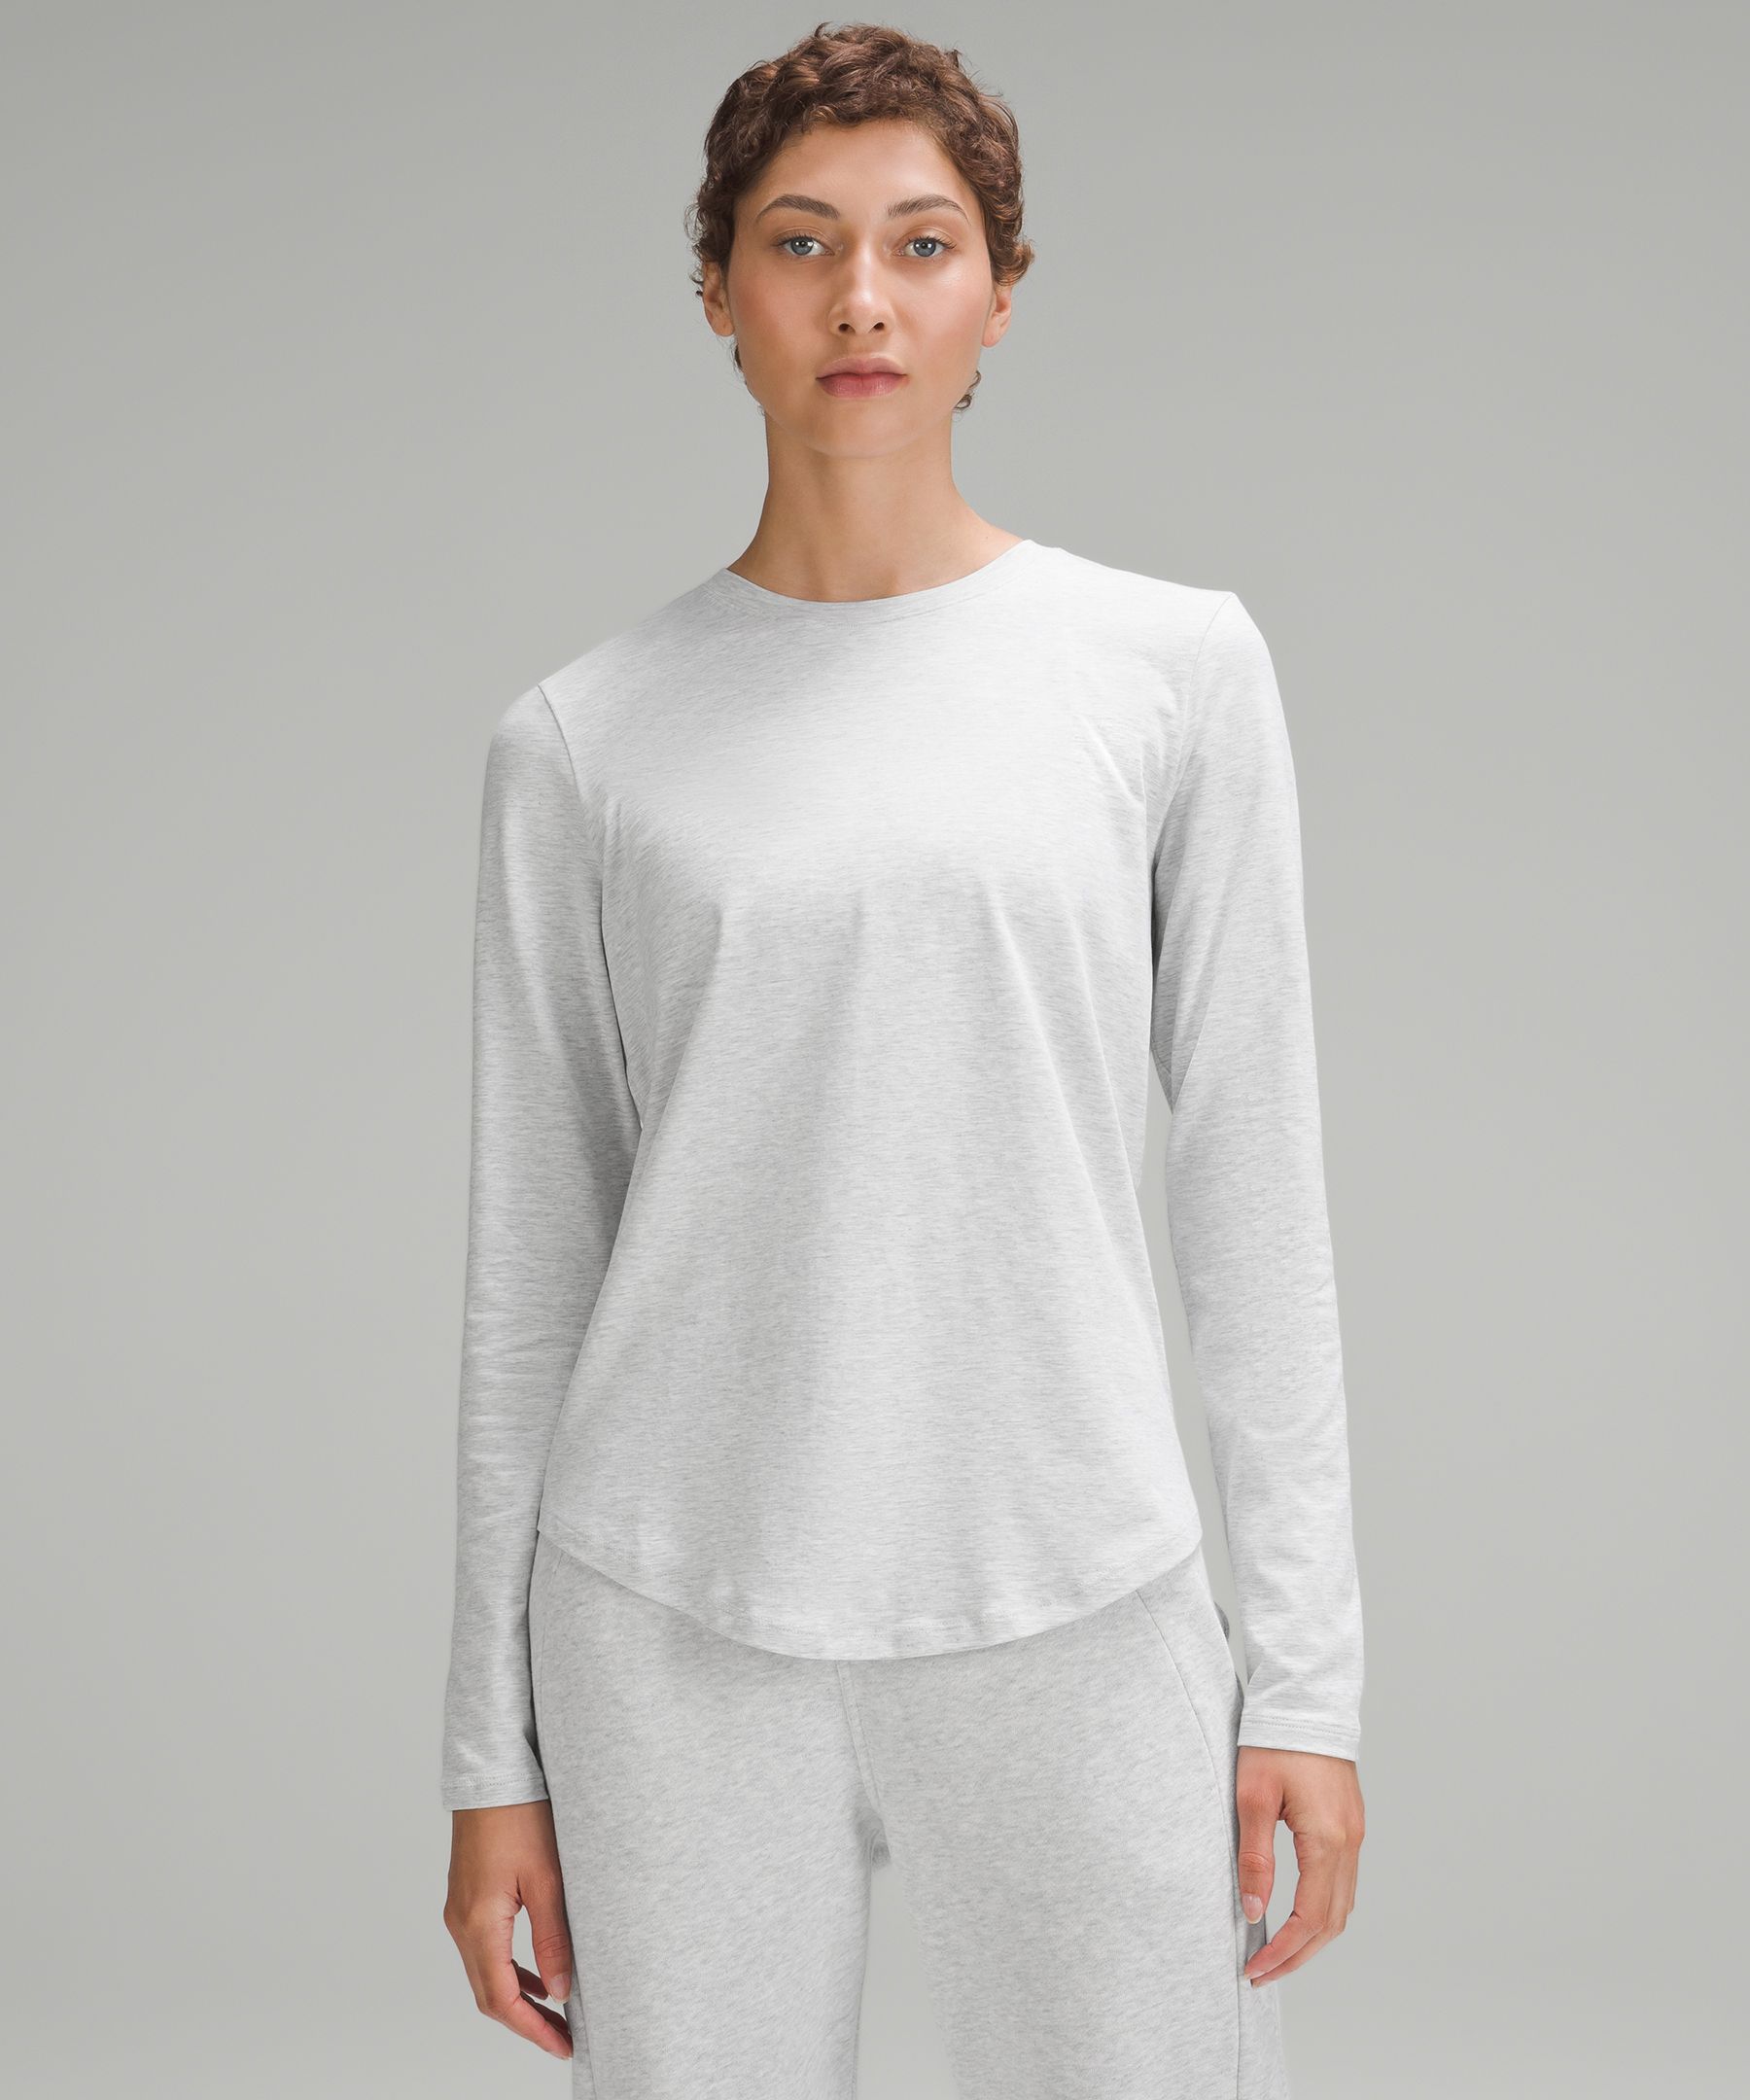 Lululemon Back in Action Long-Sleeve Shirt - White/Neutral - Size 6 Pima Cotton Fabric